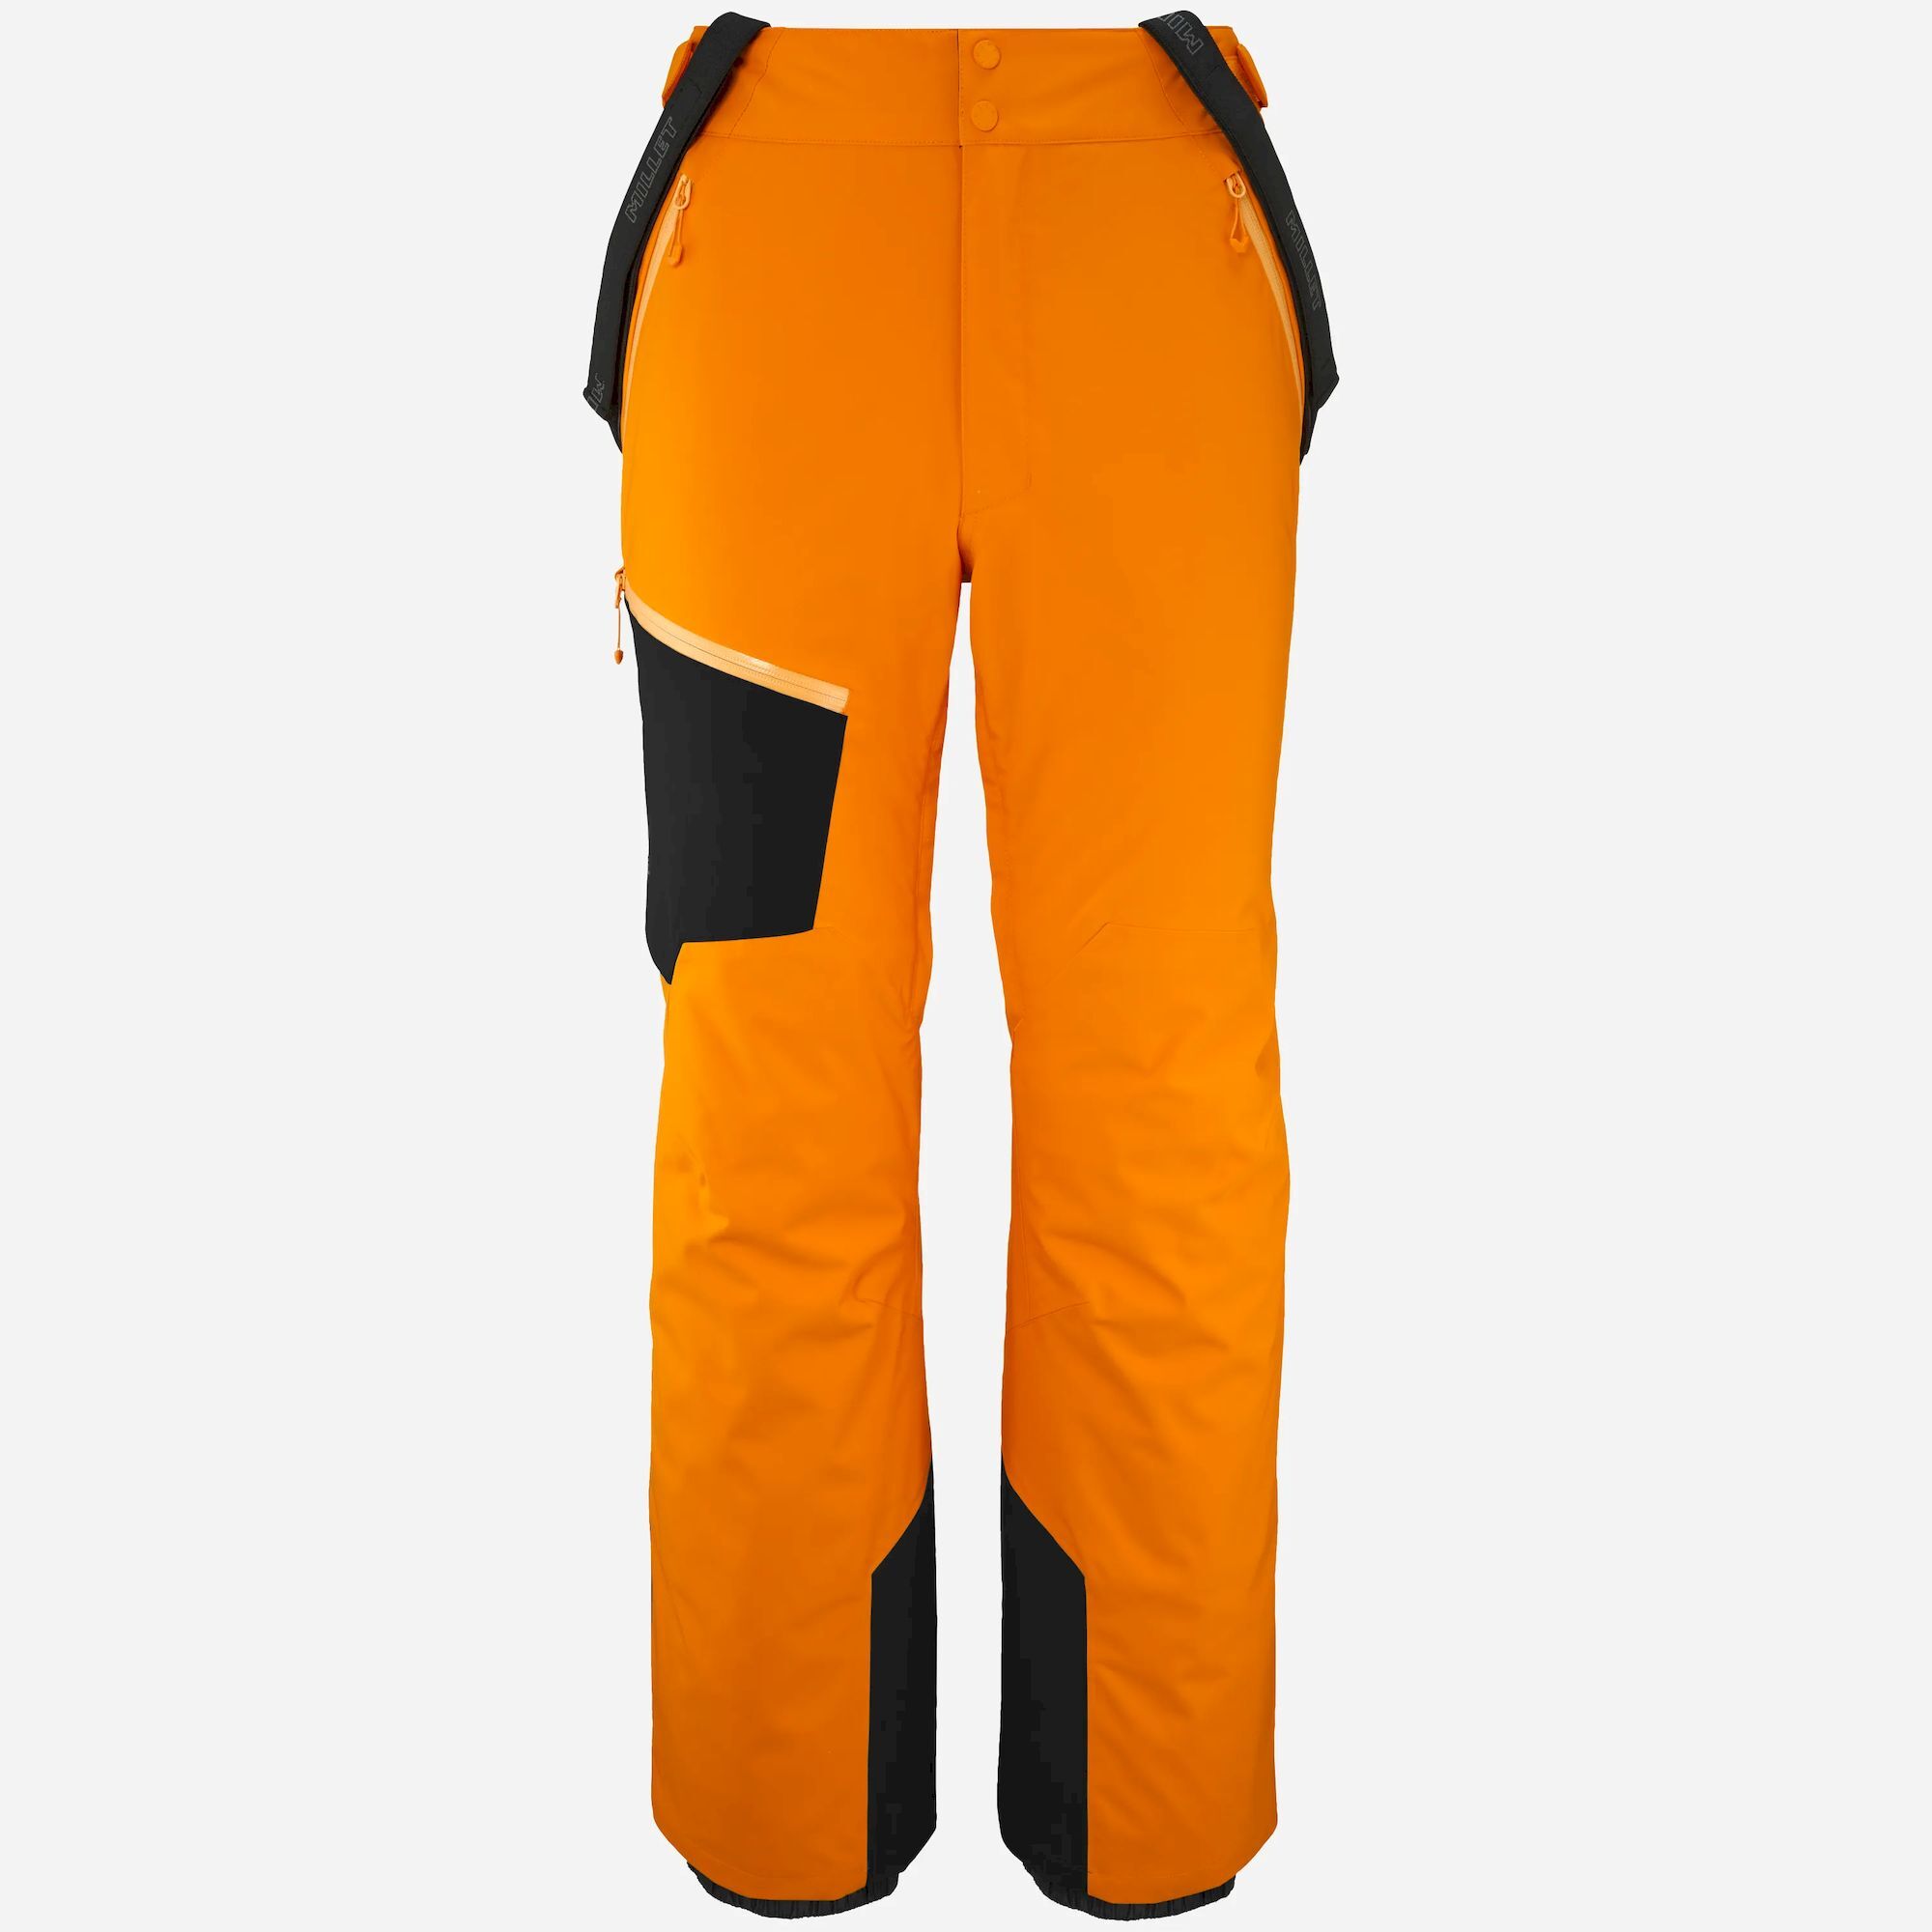 Millet Telluride Pant - Ski pants - Men's